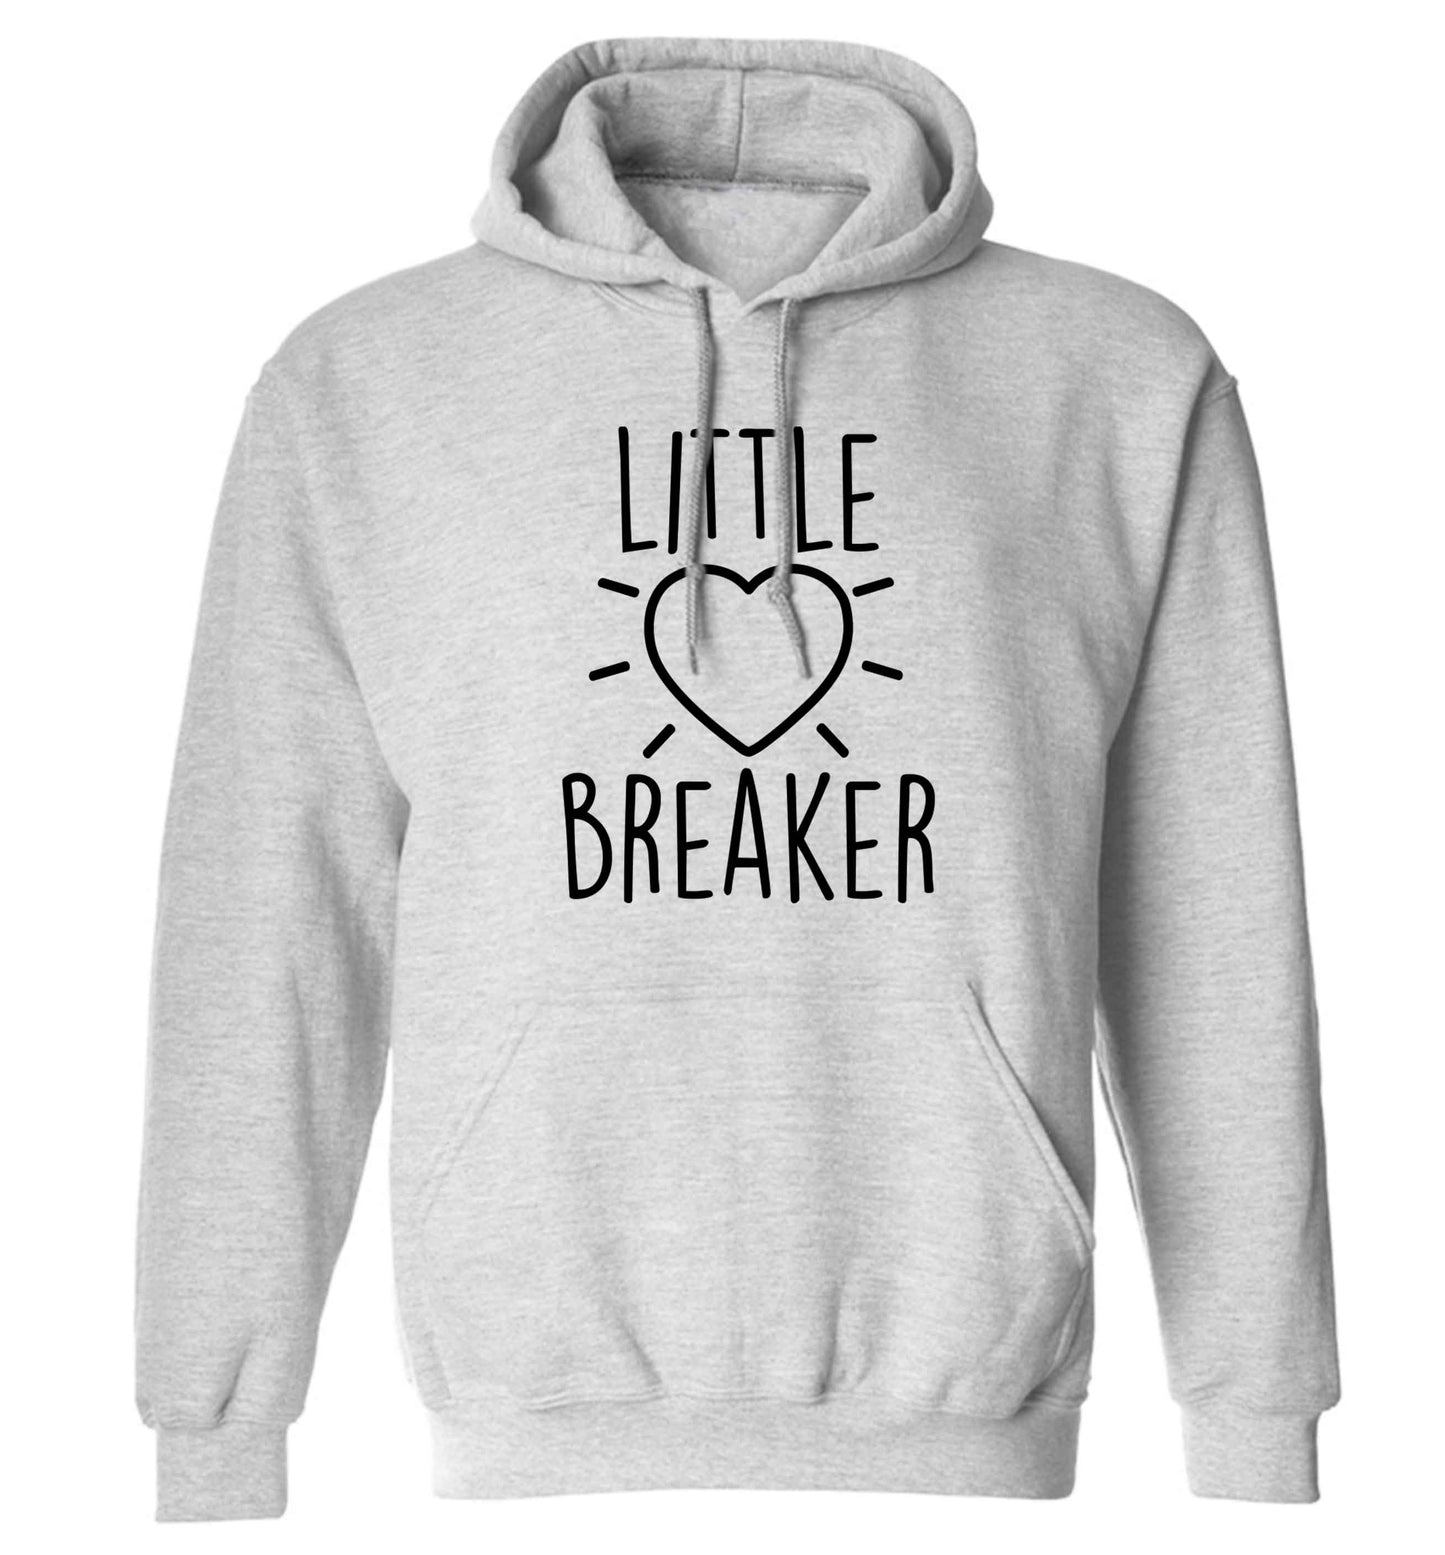 Little heartbreaker adults unisex grey hoodie 2XL